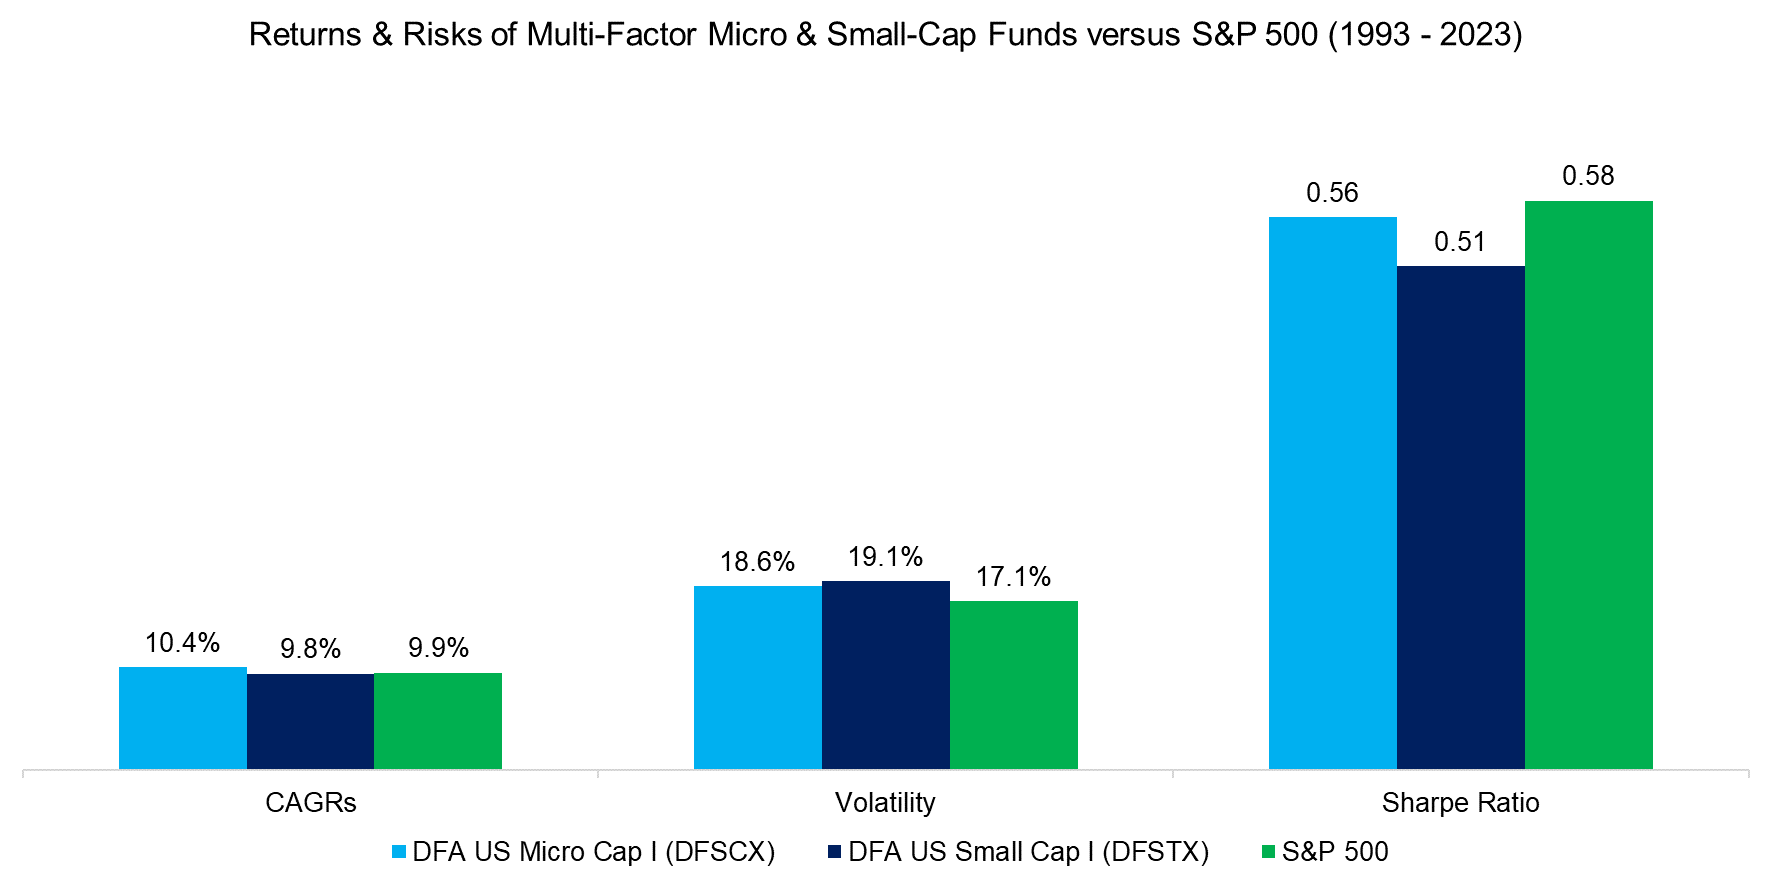 Returns & Risks of Multi-Factor Micro & Small-Cap Funds versus S&P 500 (1993 - 2023)